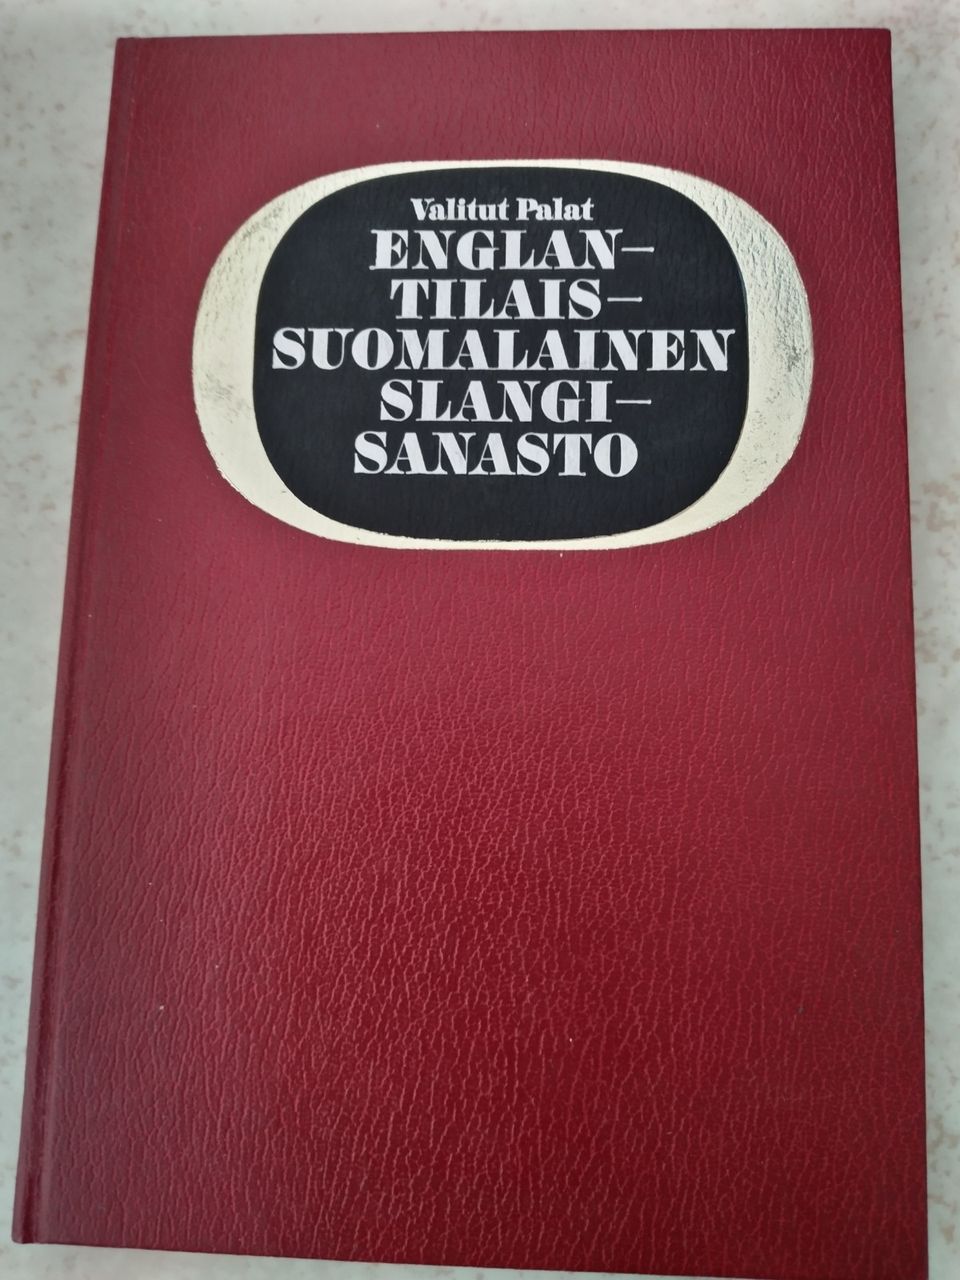 Englantilais-suomalainen slangisanasto